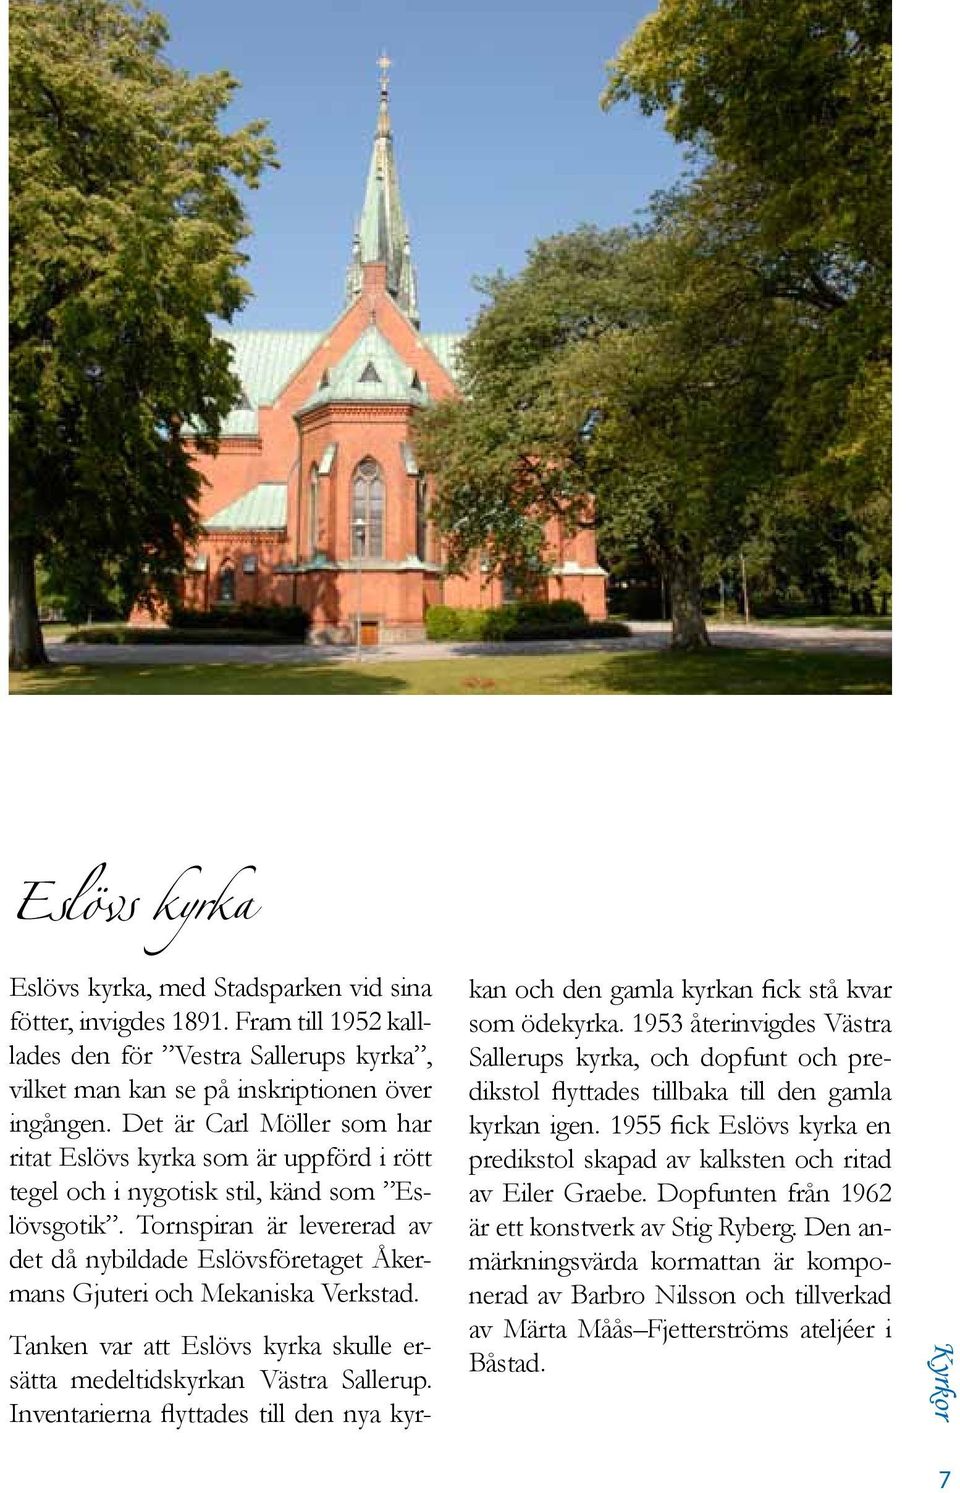 Tornspiran är levererad av det då nybildade Eslövsföretaget Åkermans Gjuteri och Mekaniska Verkstad. Tanken var att Eslövs kyrka skulle ersätta medeltidskyrkan Västra Sallerup.